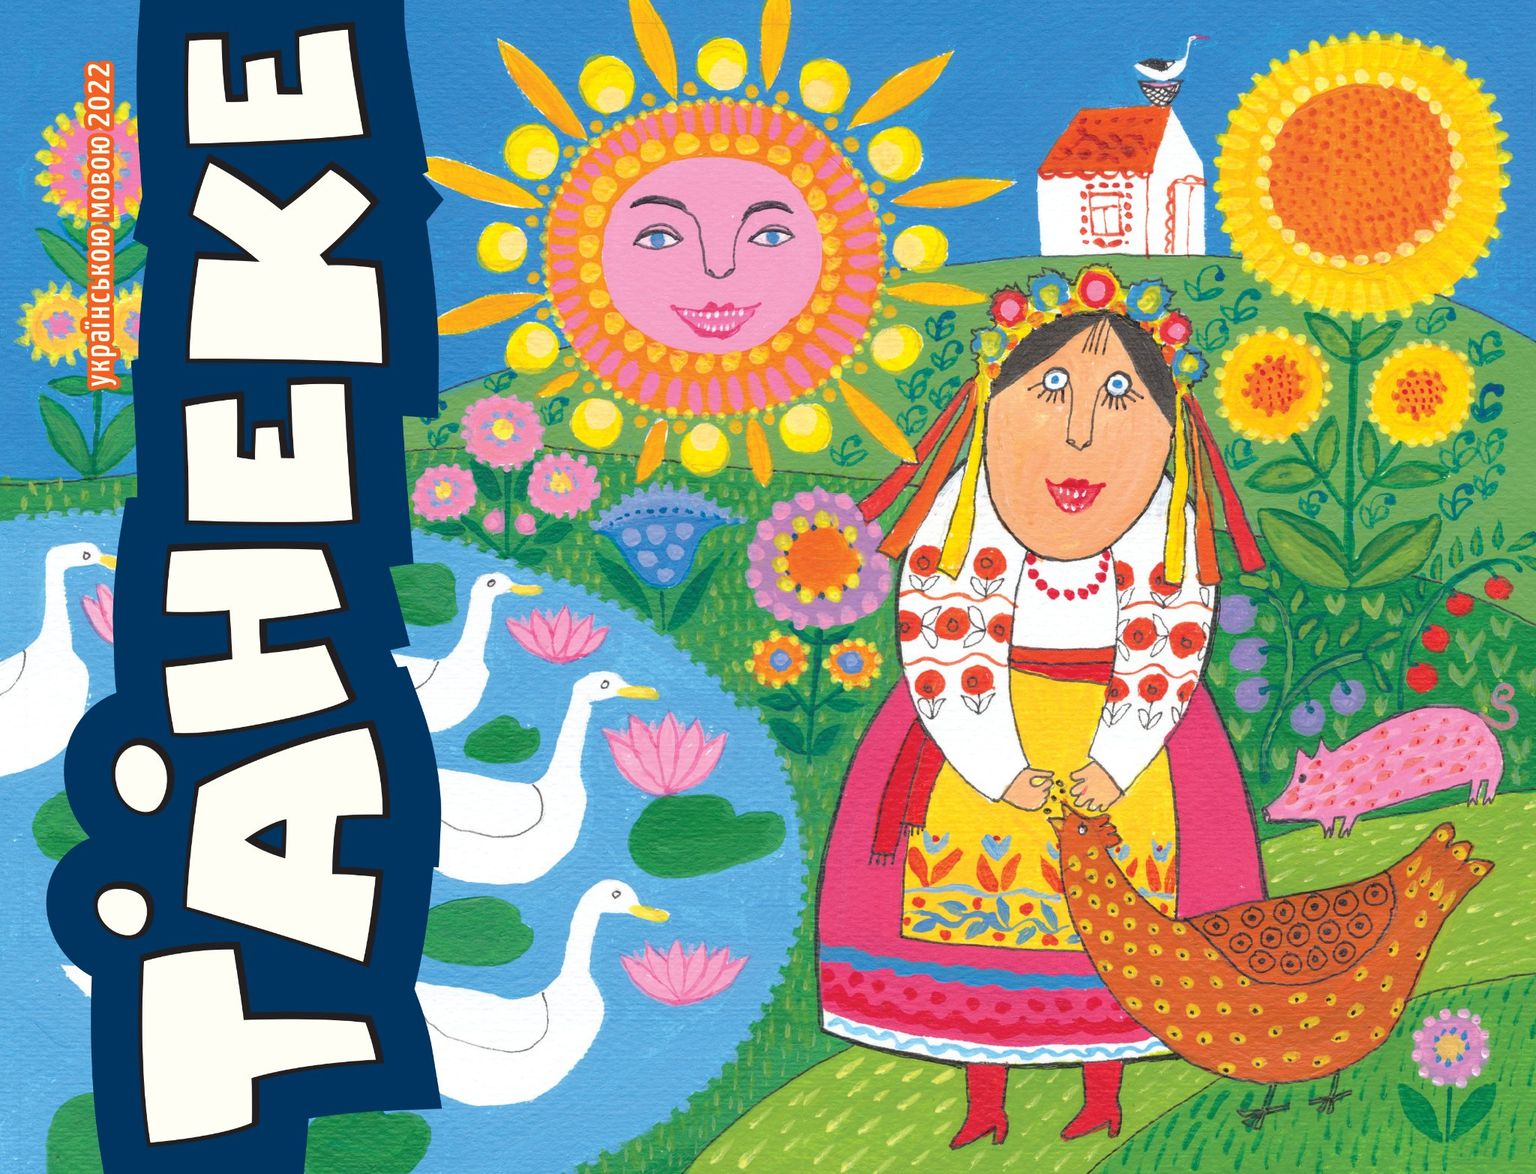 Первый номер детского журнала Täheke на украинском языке.